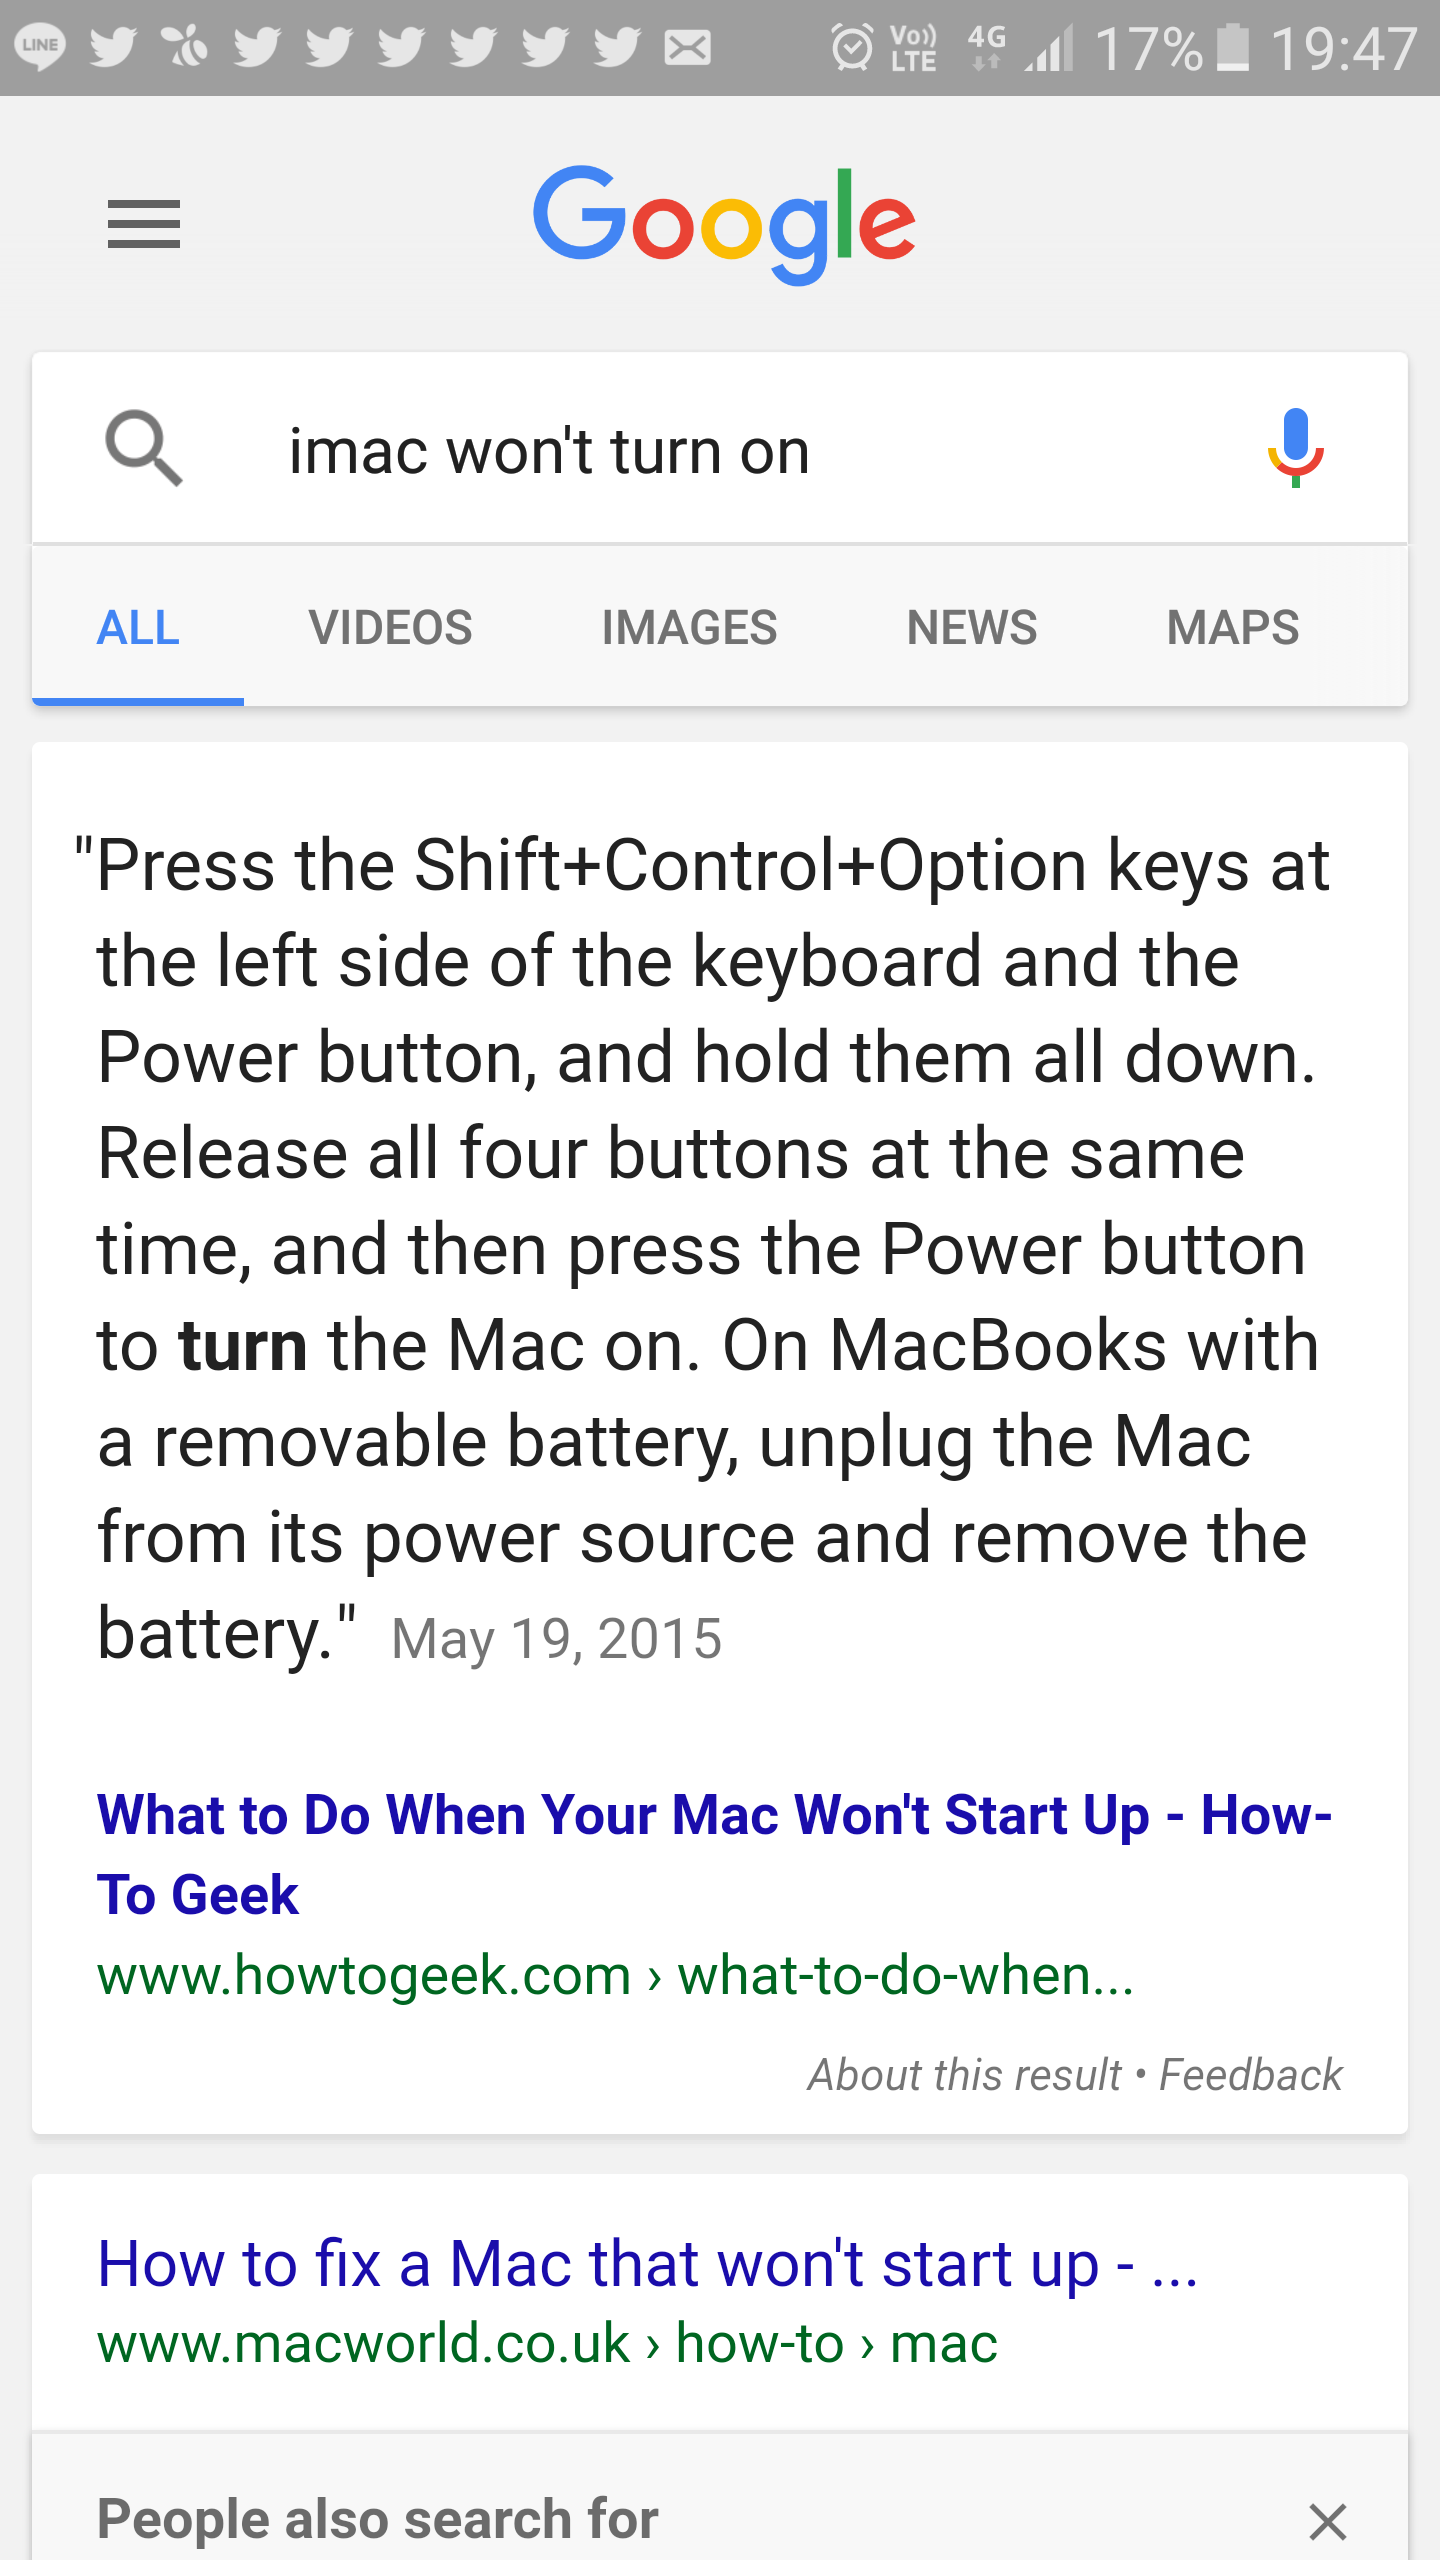 ค้น Google บน Galaxy S6 Edge หาวิธีแก้ iMac Boot ไม่ผ่าน